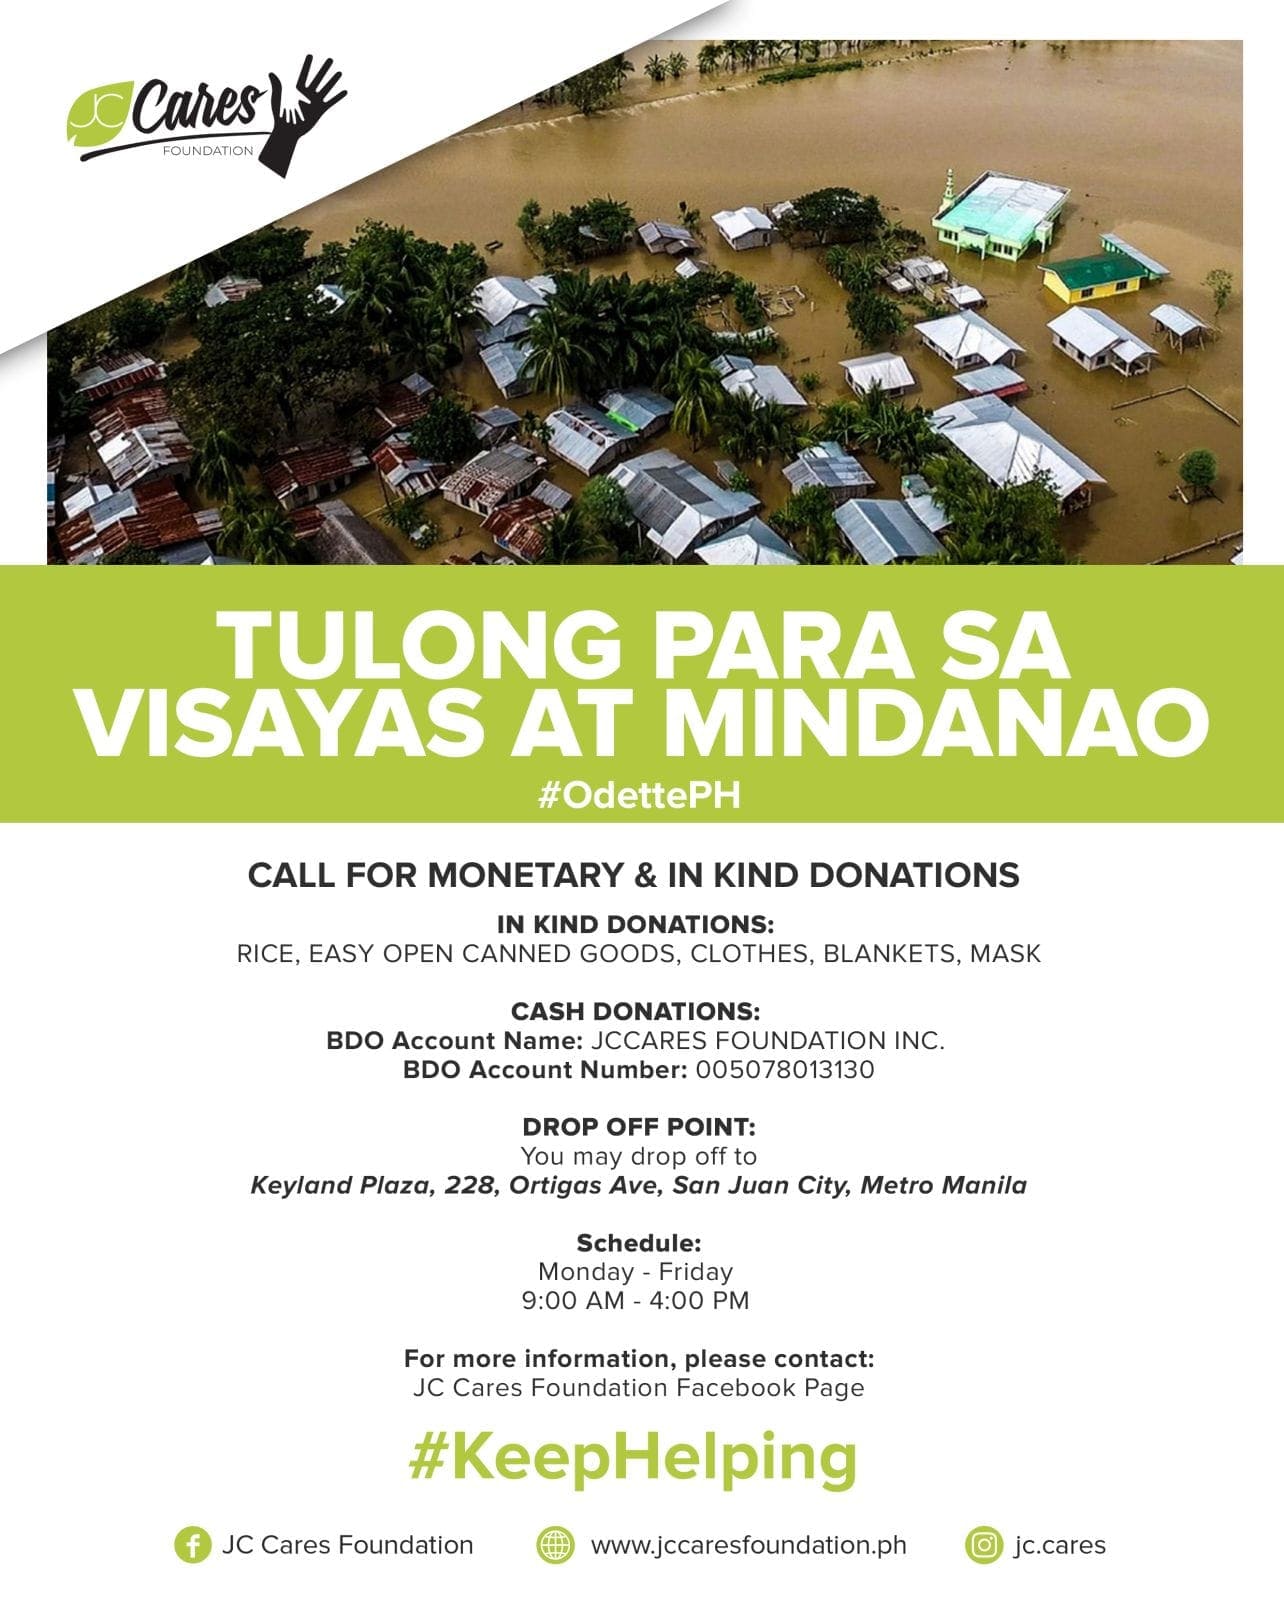 Tulong Para sa Visayas at Mindanao